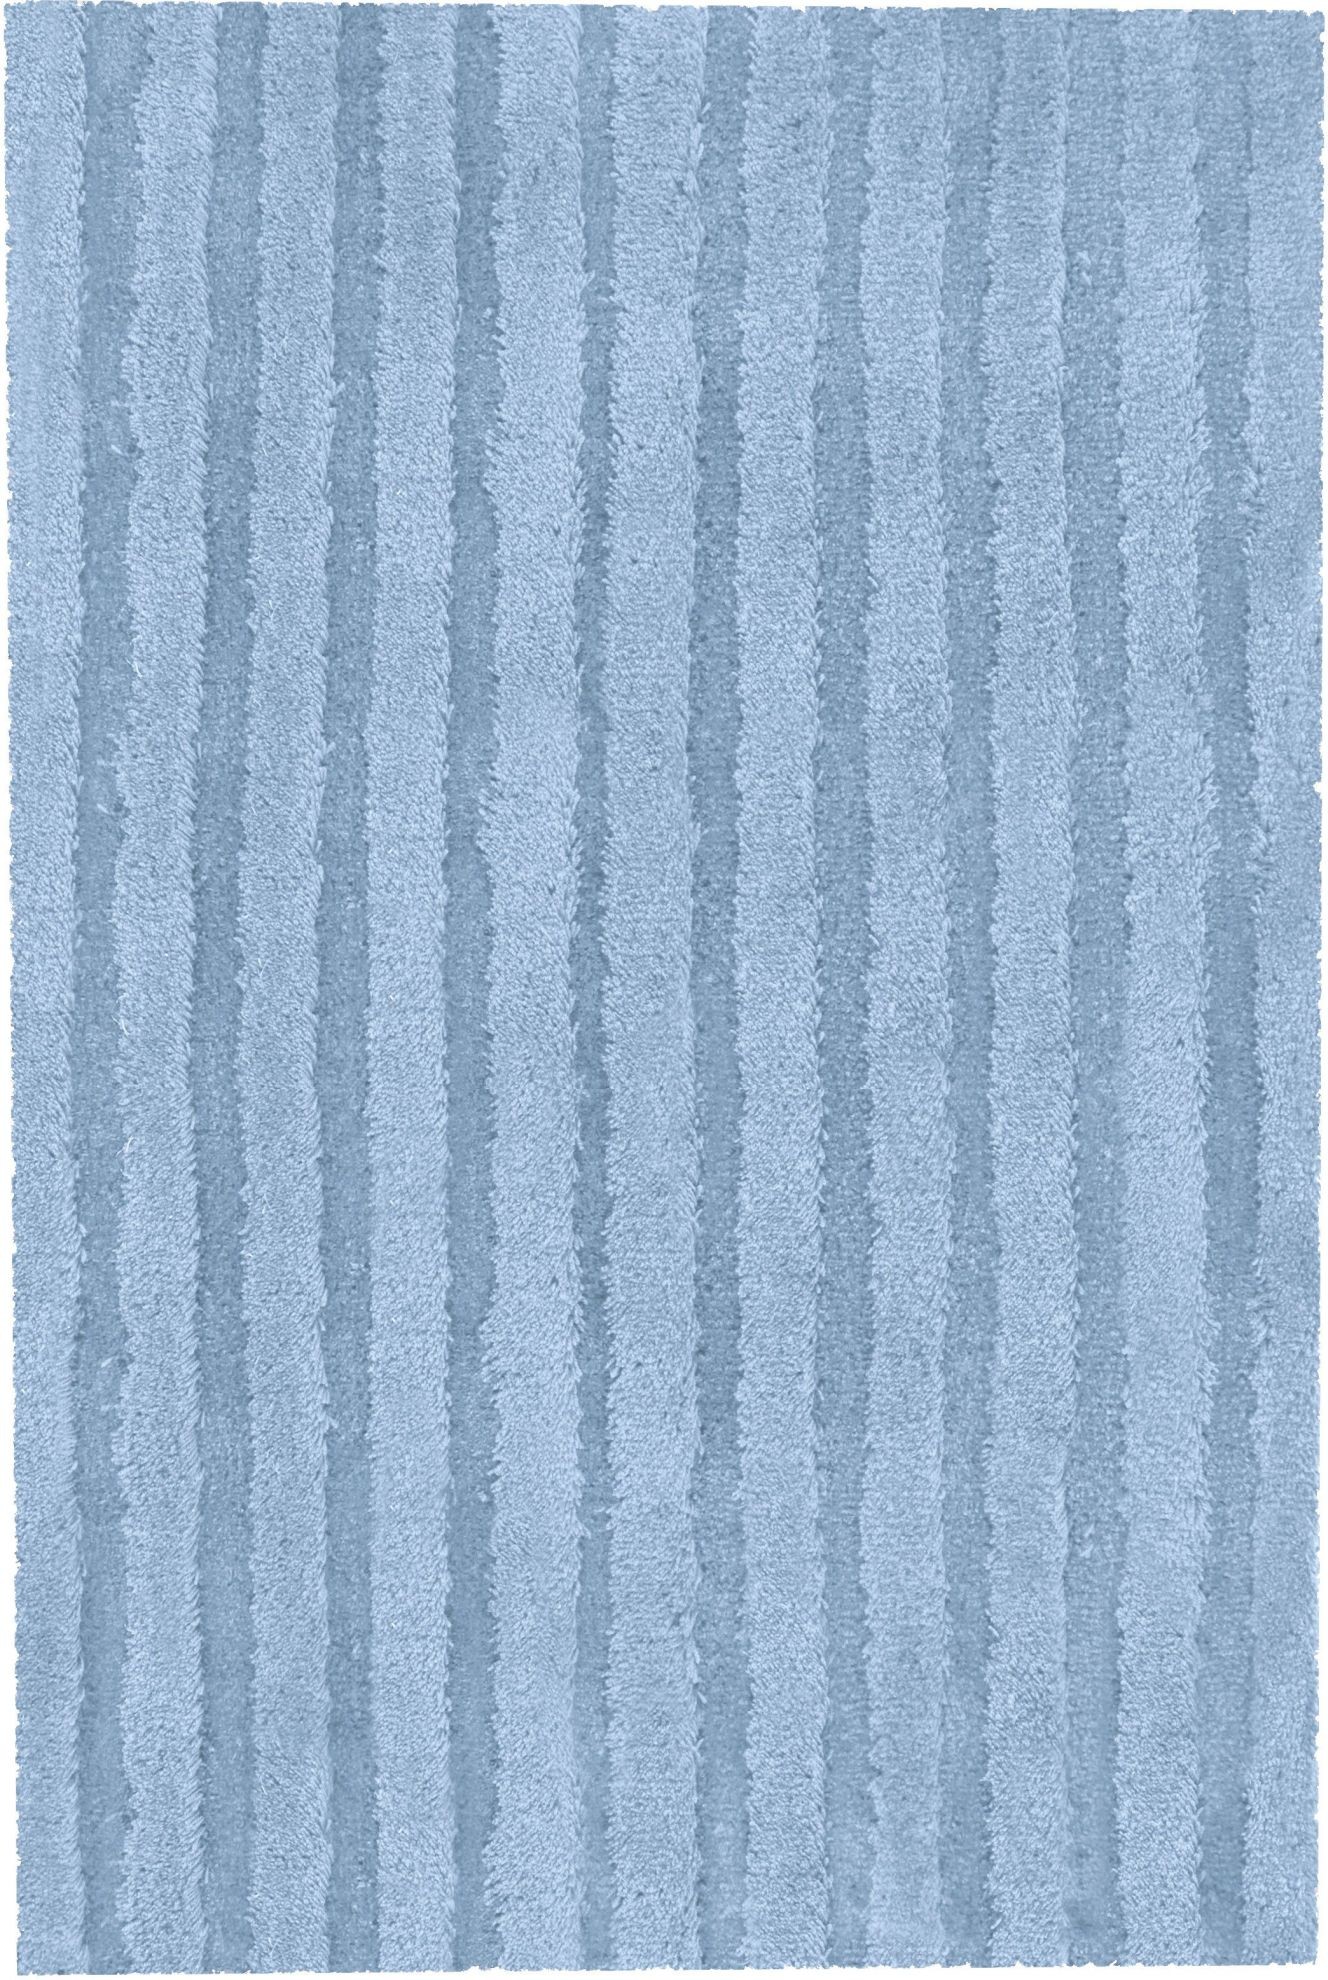 Kleine Wolke Cord - Dywan kąpielowy niebieski 60x100 cm 9170746360